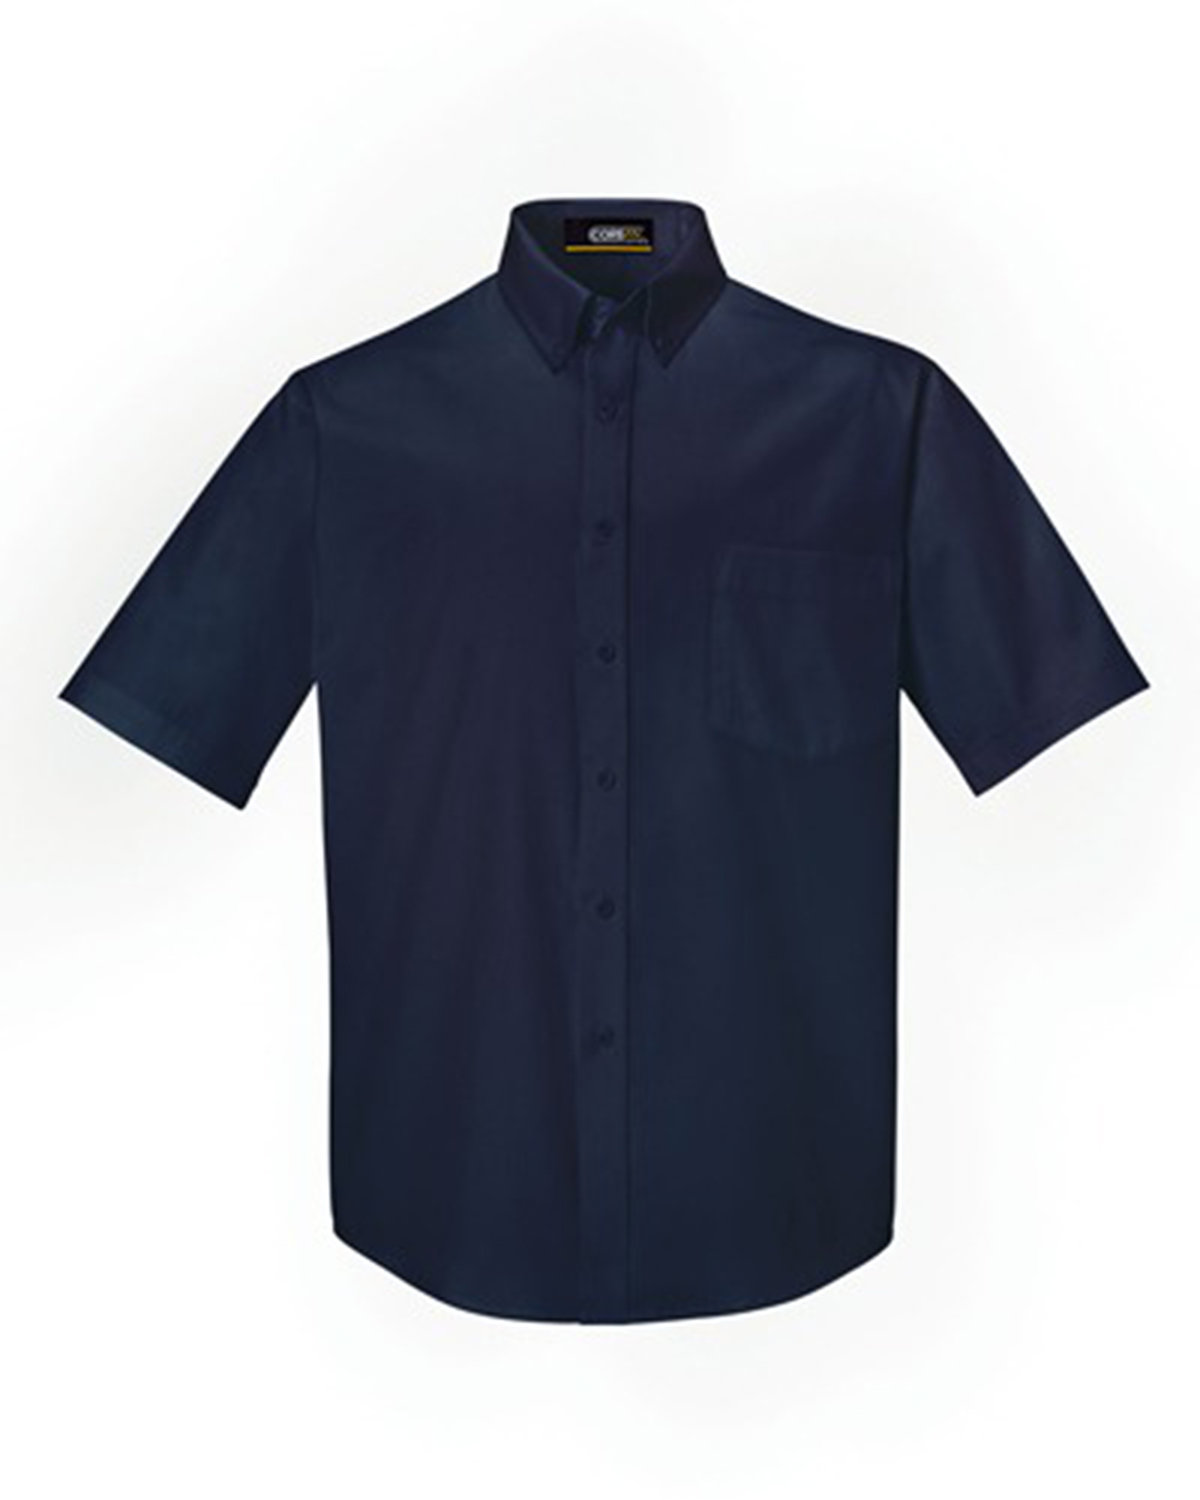 CORE365 Men's Optimum Short-Sleeve Twill Shirt | alphabroder